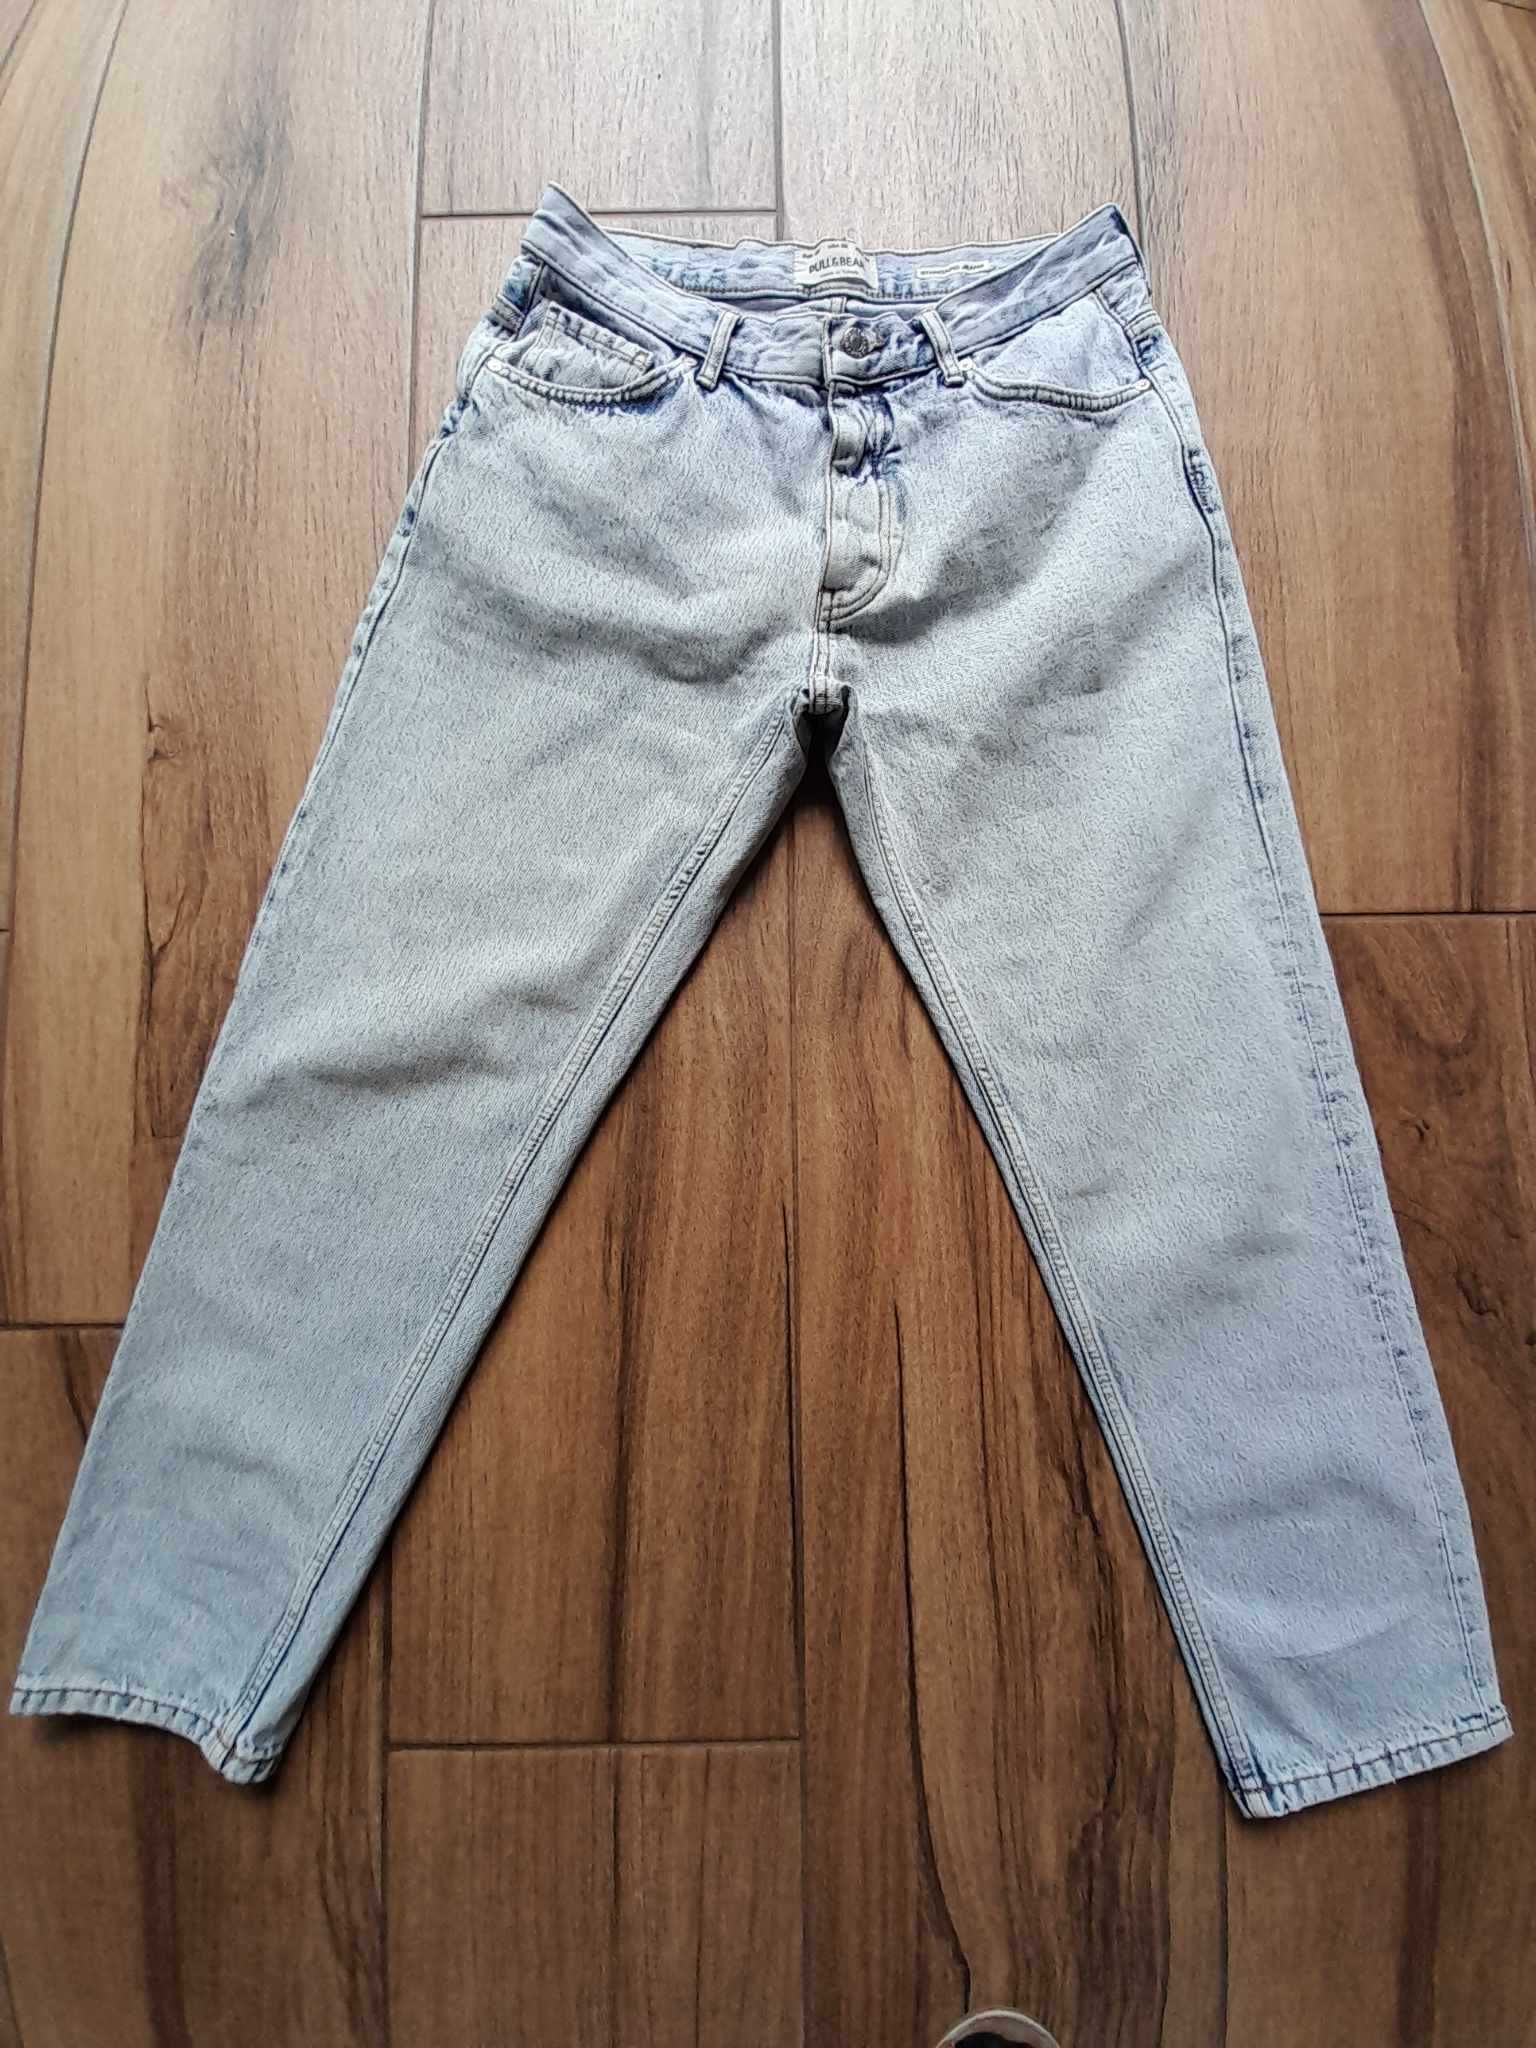 Spodnie męskie PULL&BEAR typu standard, błękitne - stan idealny